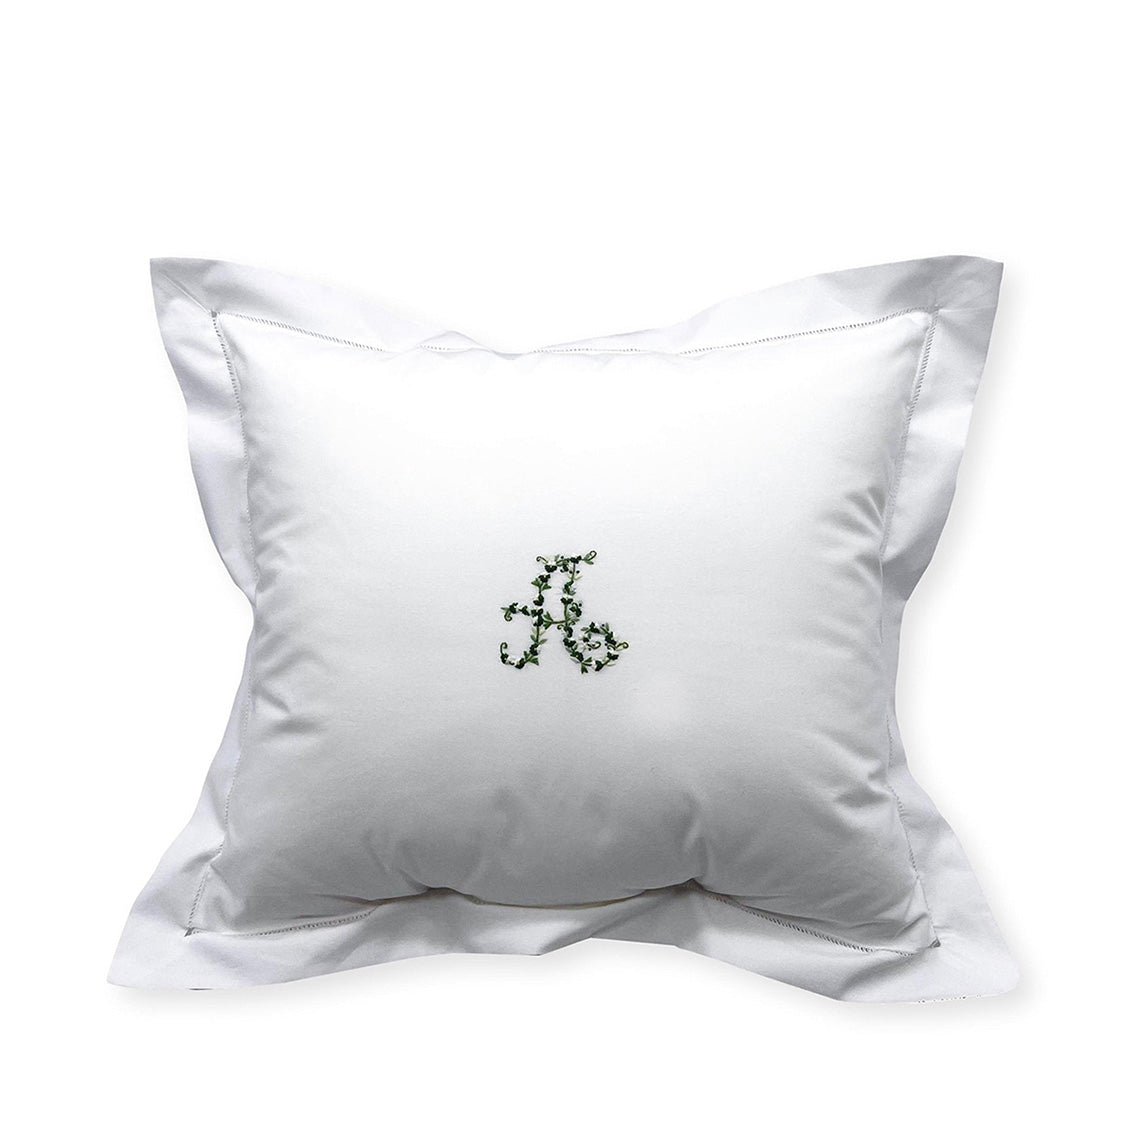 Julia B. Gift Wrap Fiorellino Pillow